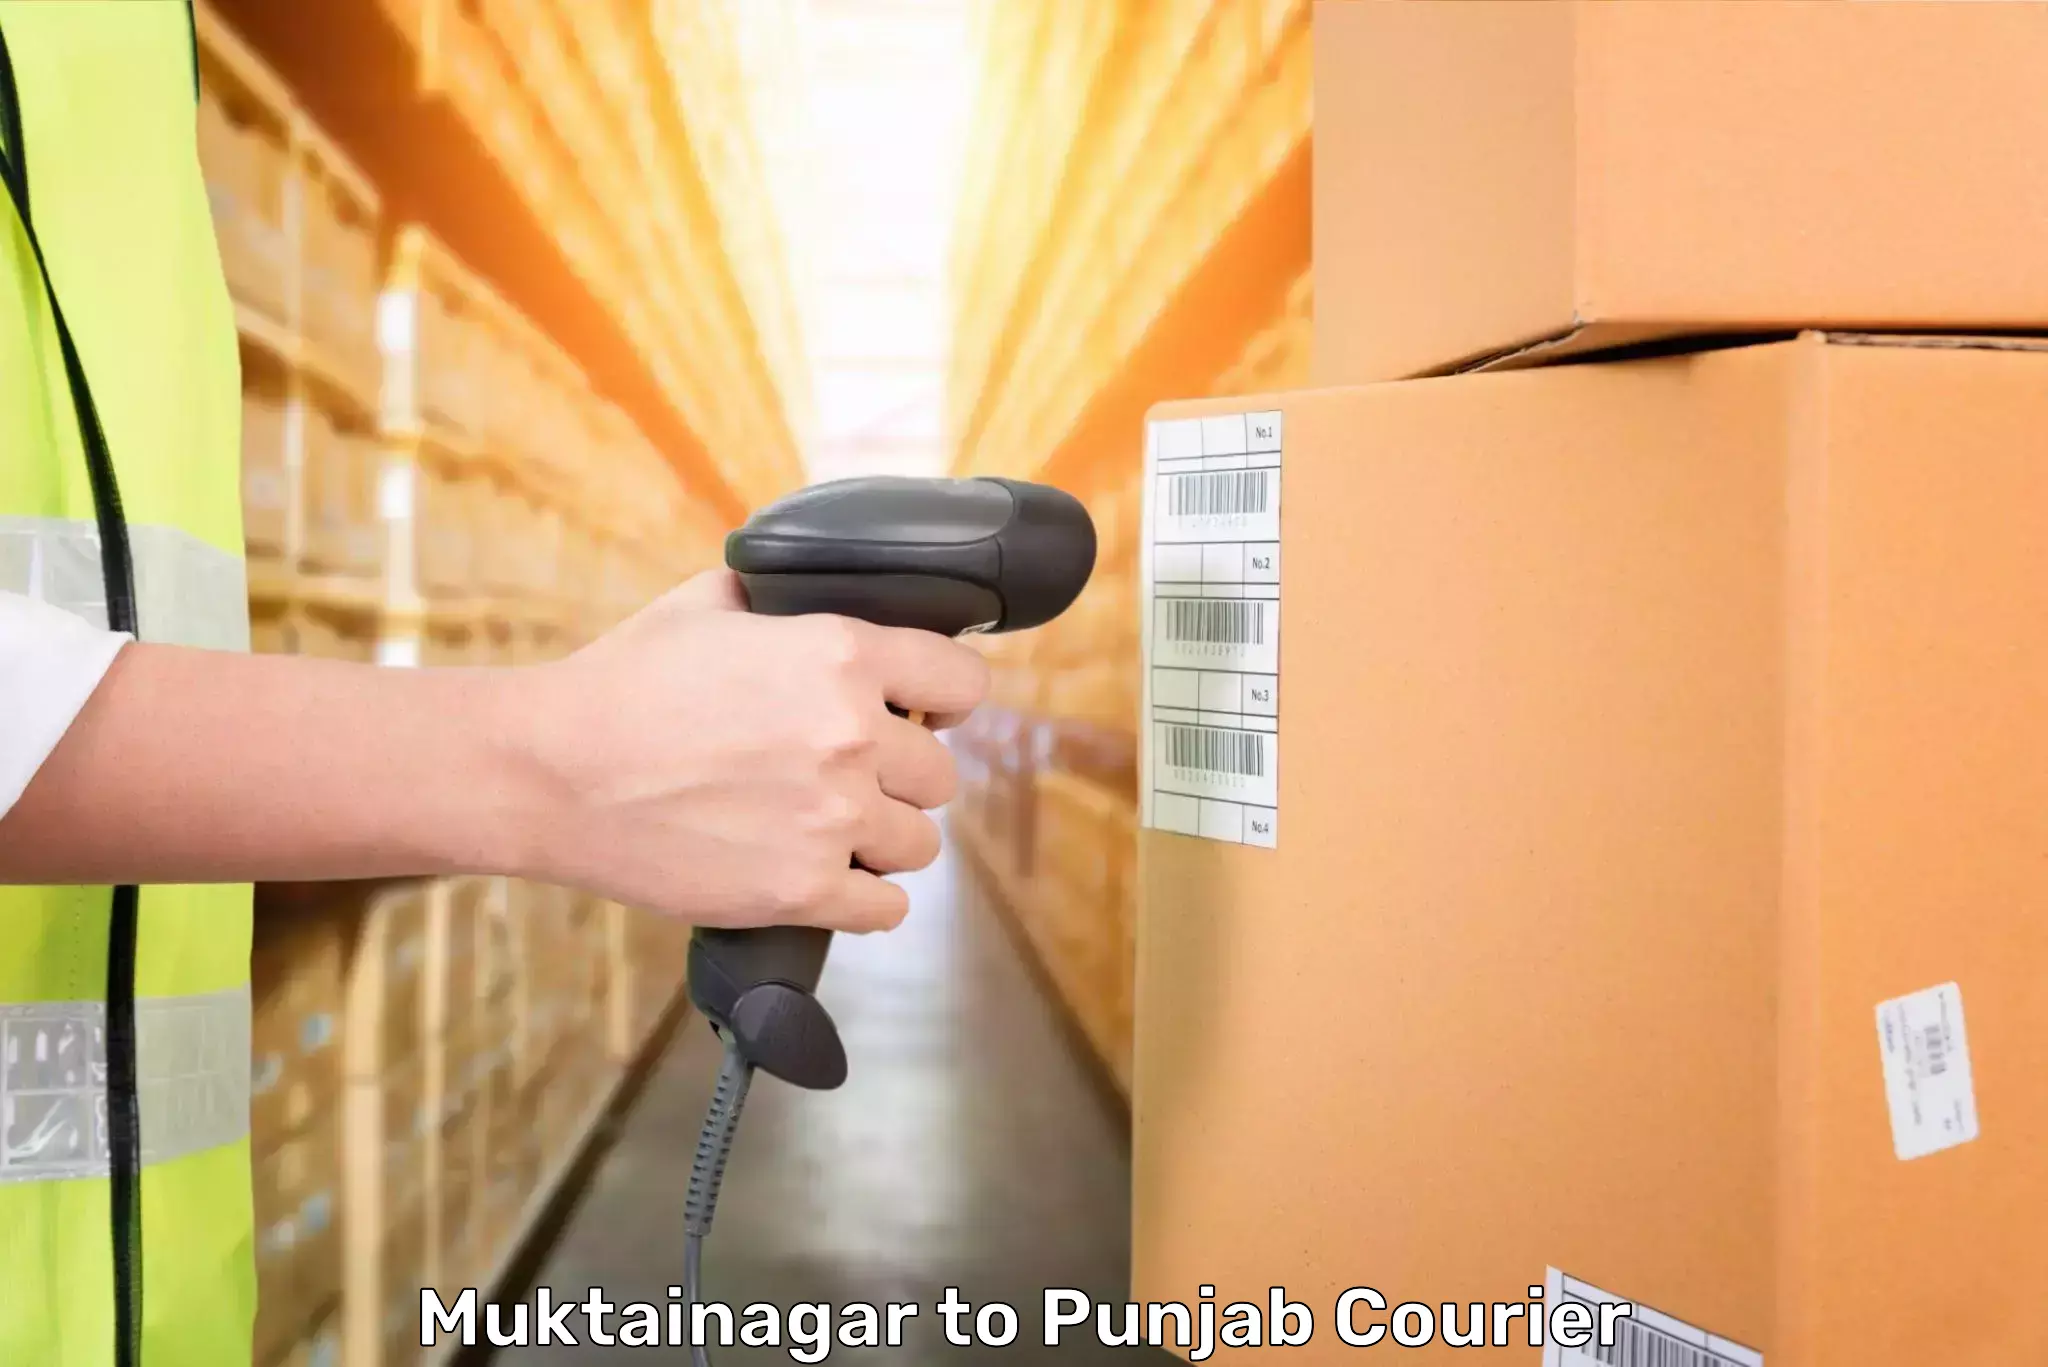 Luggage forwarding service Muktainagar to Mohali